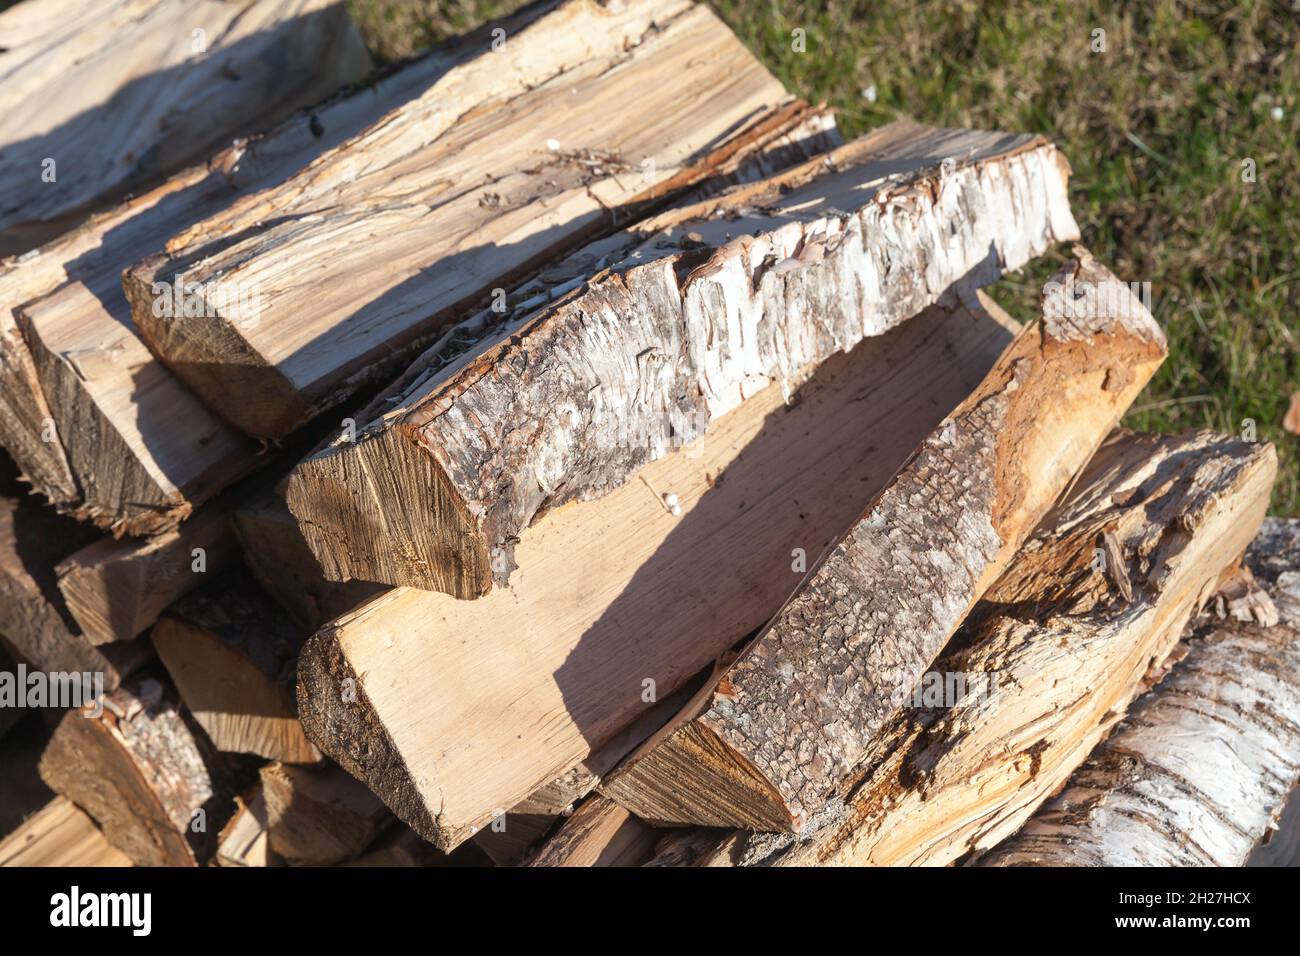 Stapel von Brennholz, Birkenkeile lagen in einem Sonnenlicht gestapelt, Außenfoto Stockfoto